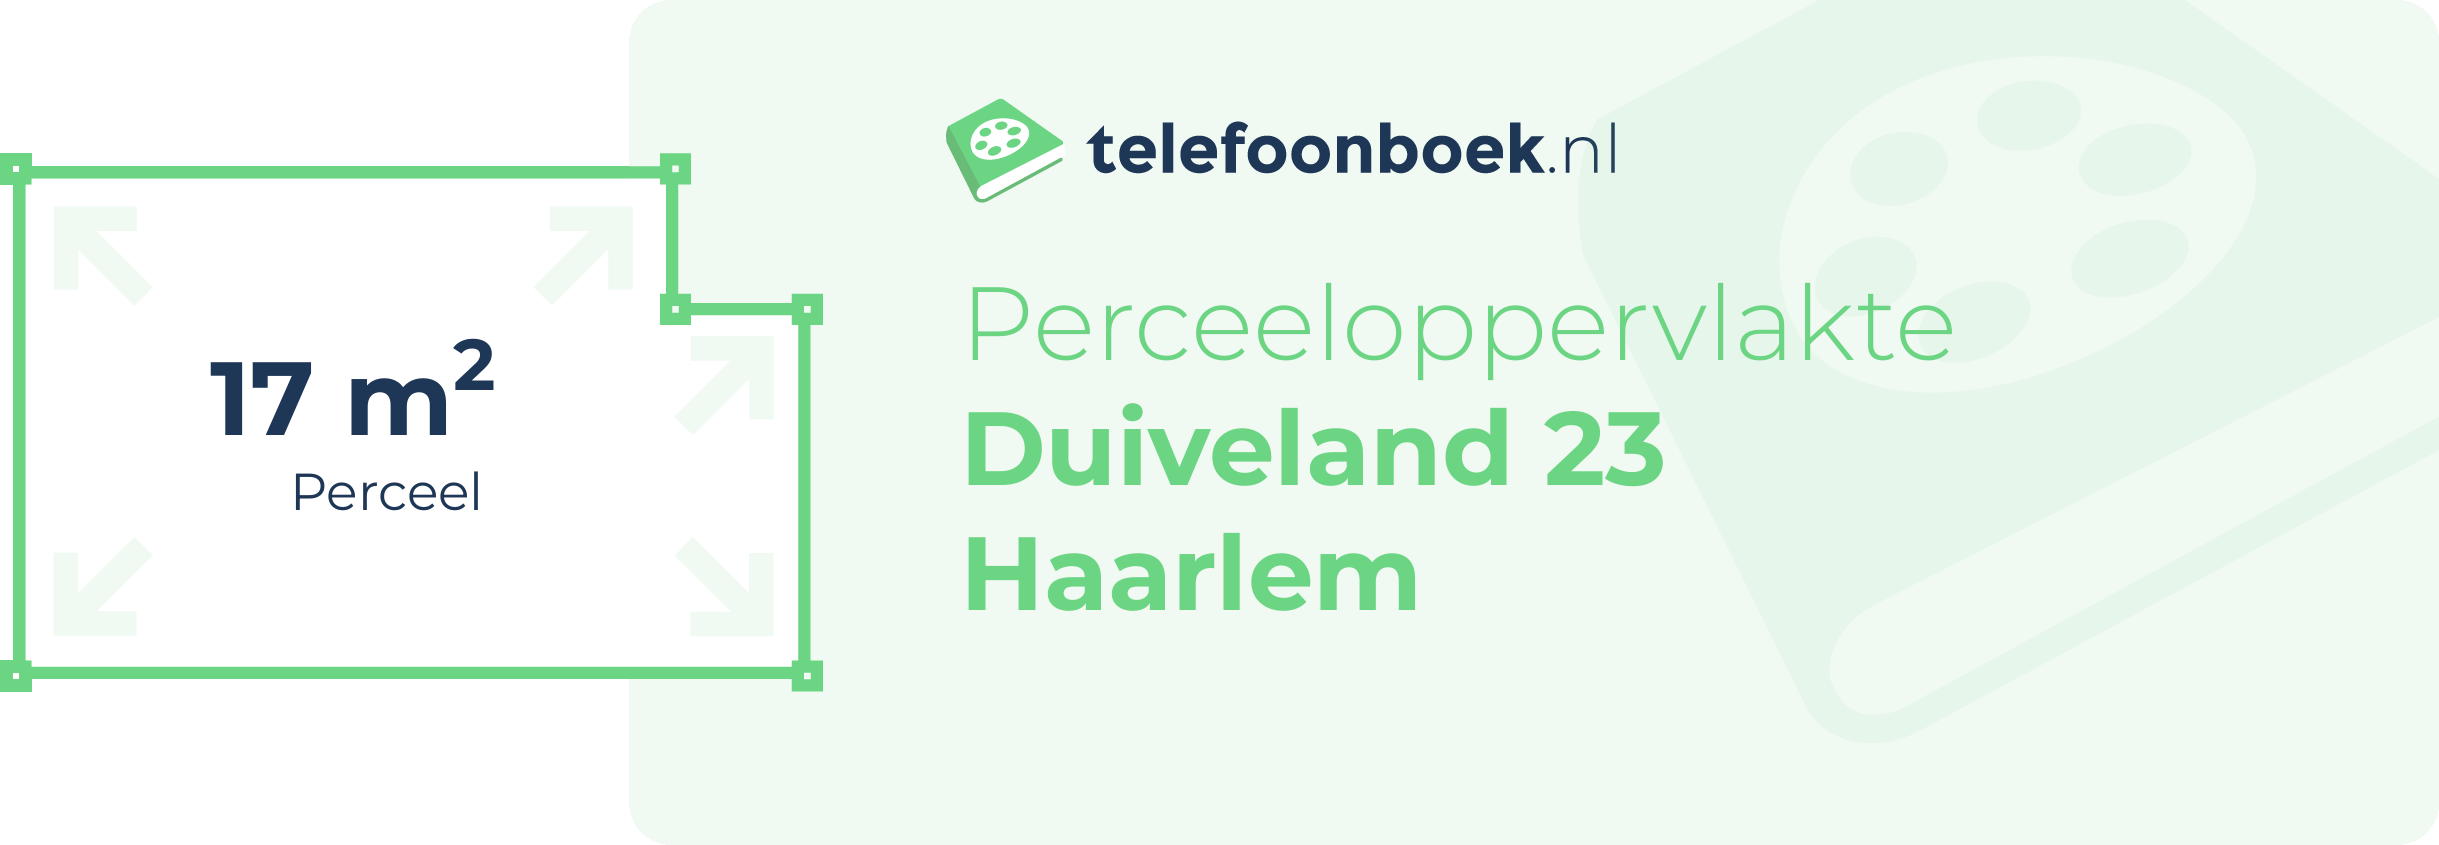 Perceeloppervlakte Duiveland 23 Haarlem